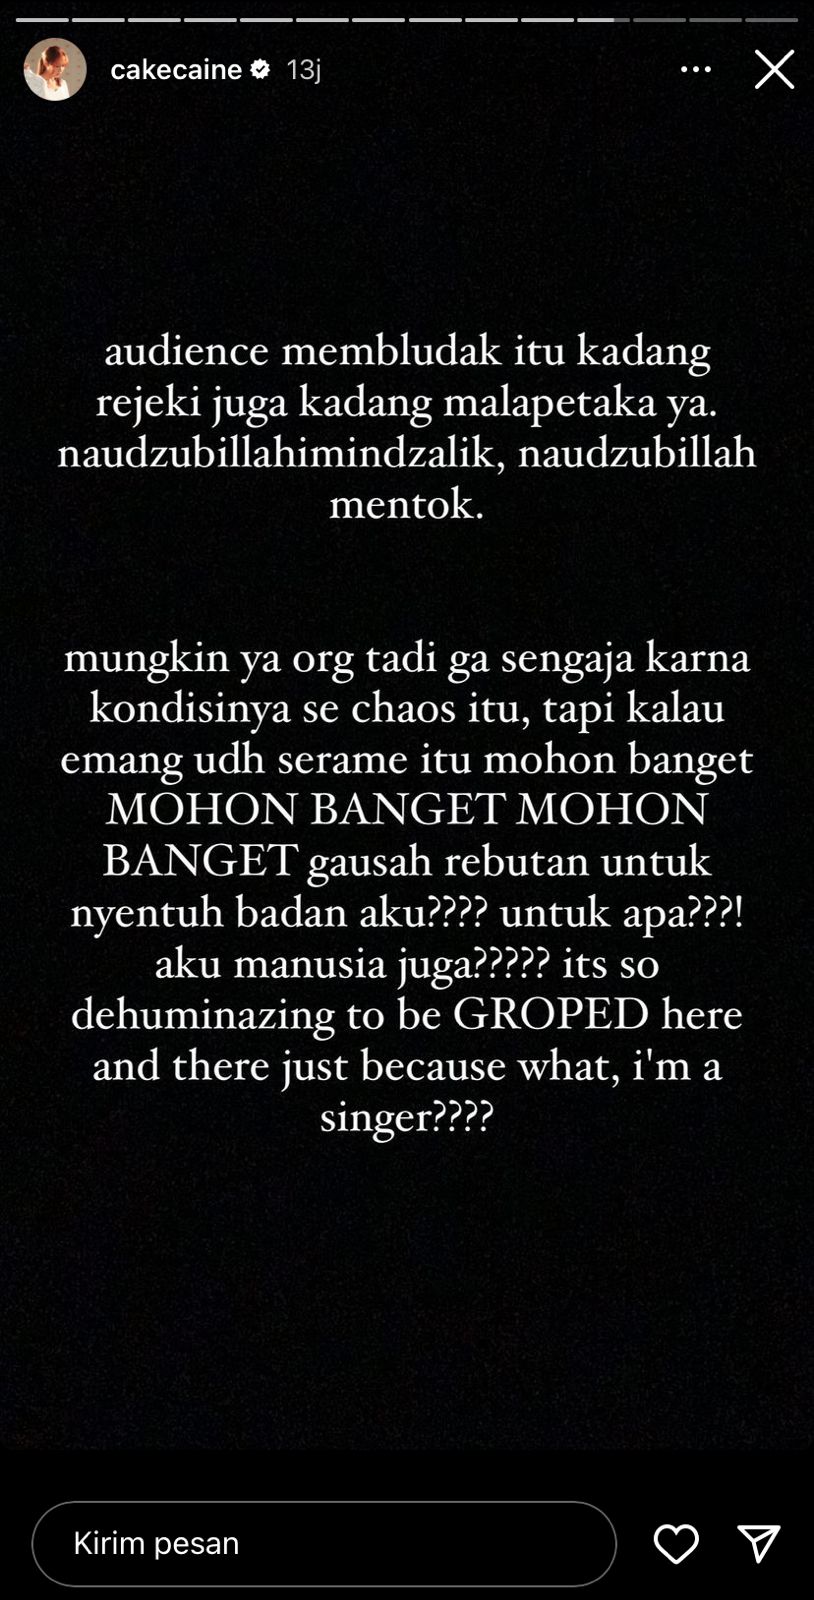 Nadin Amizah alami pelecehan seksual saat manggung di Bandung, tak akan lagi terima acara gratis